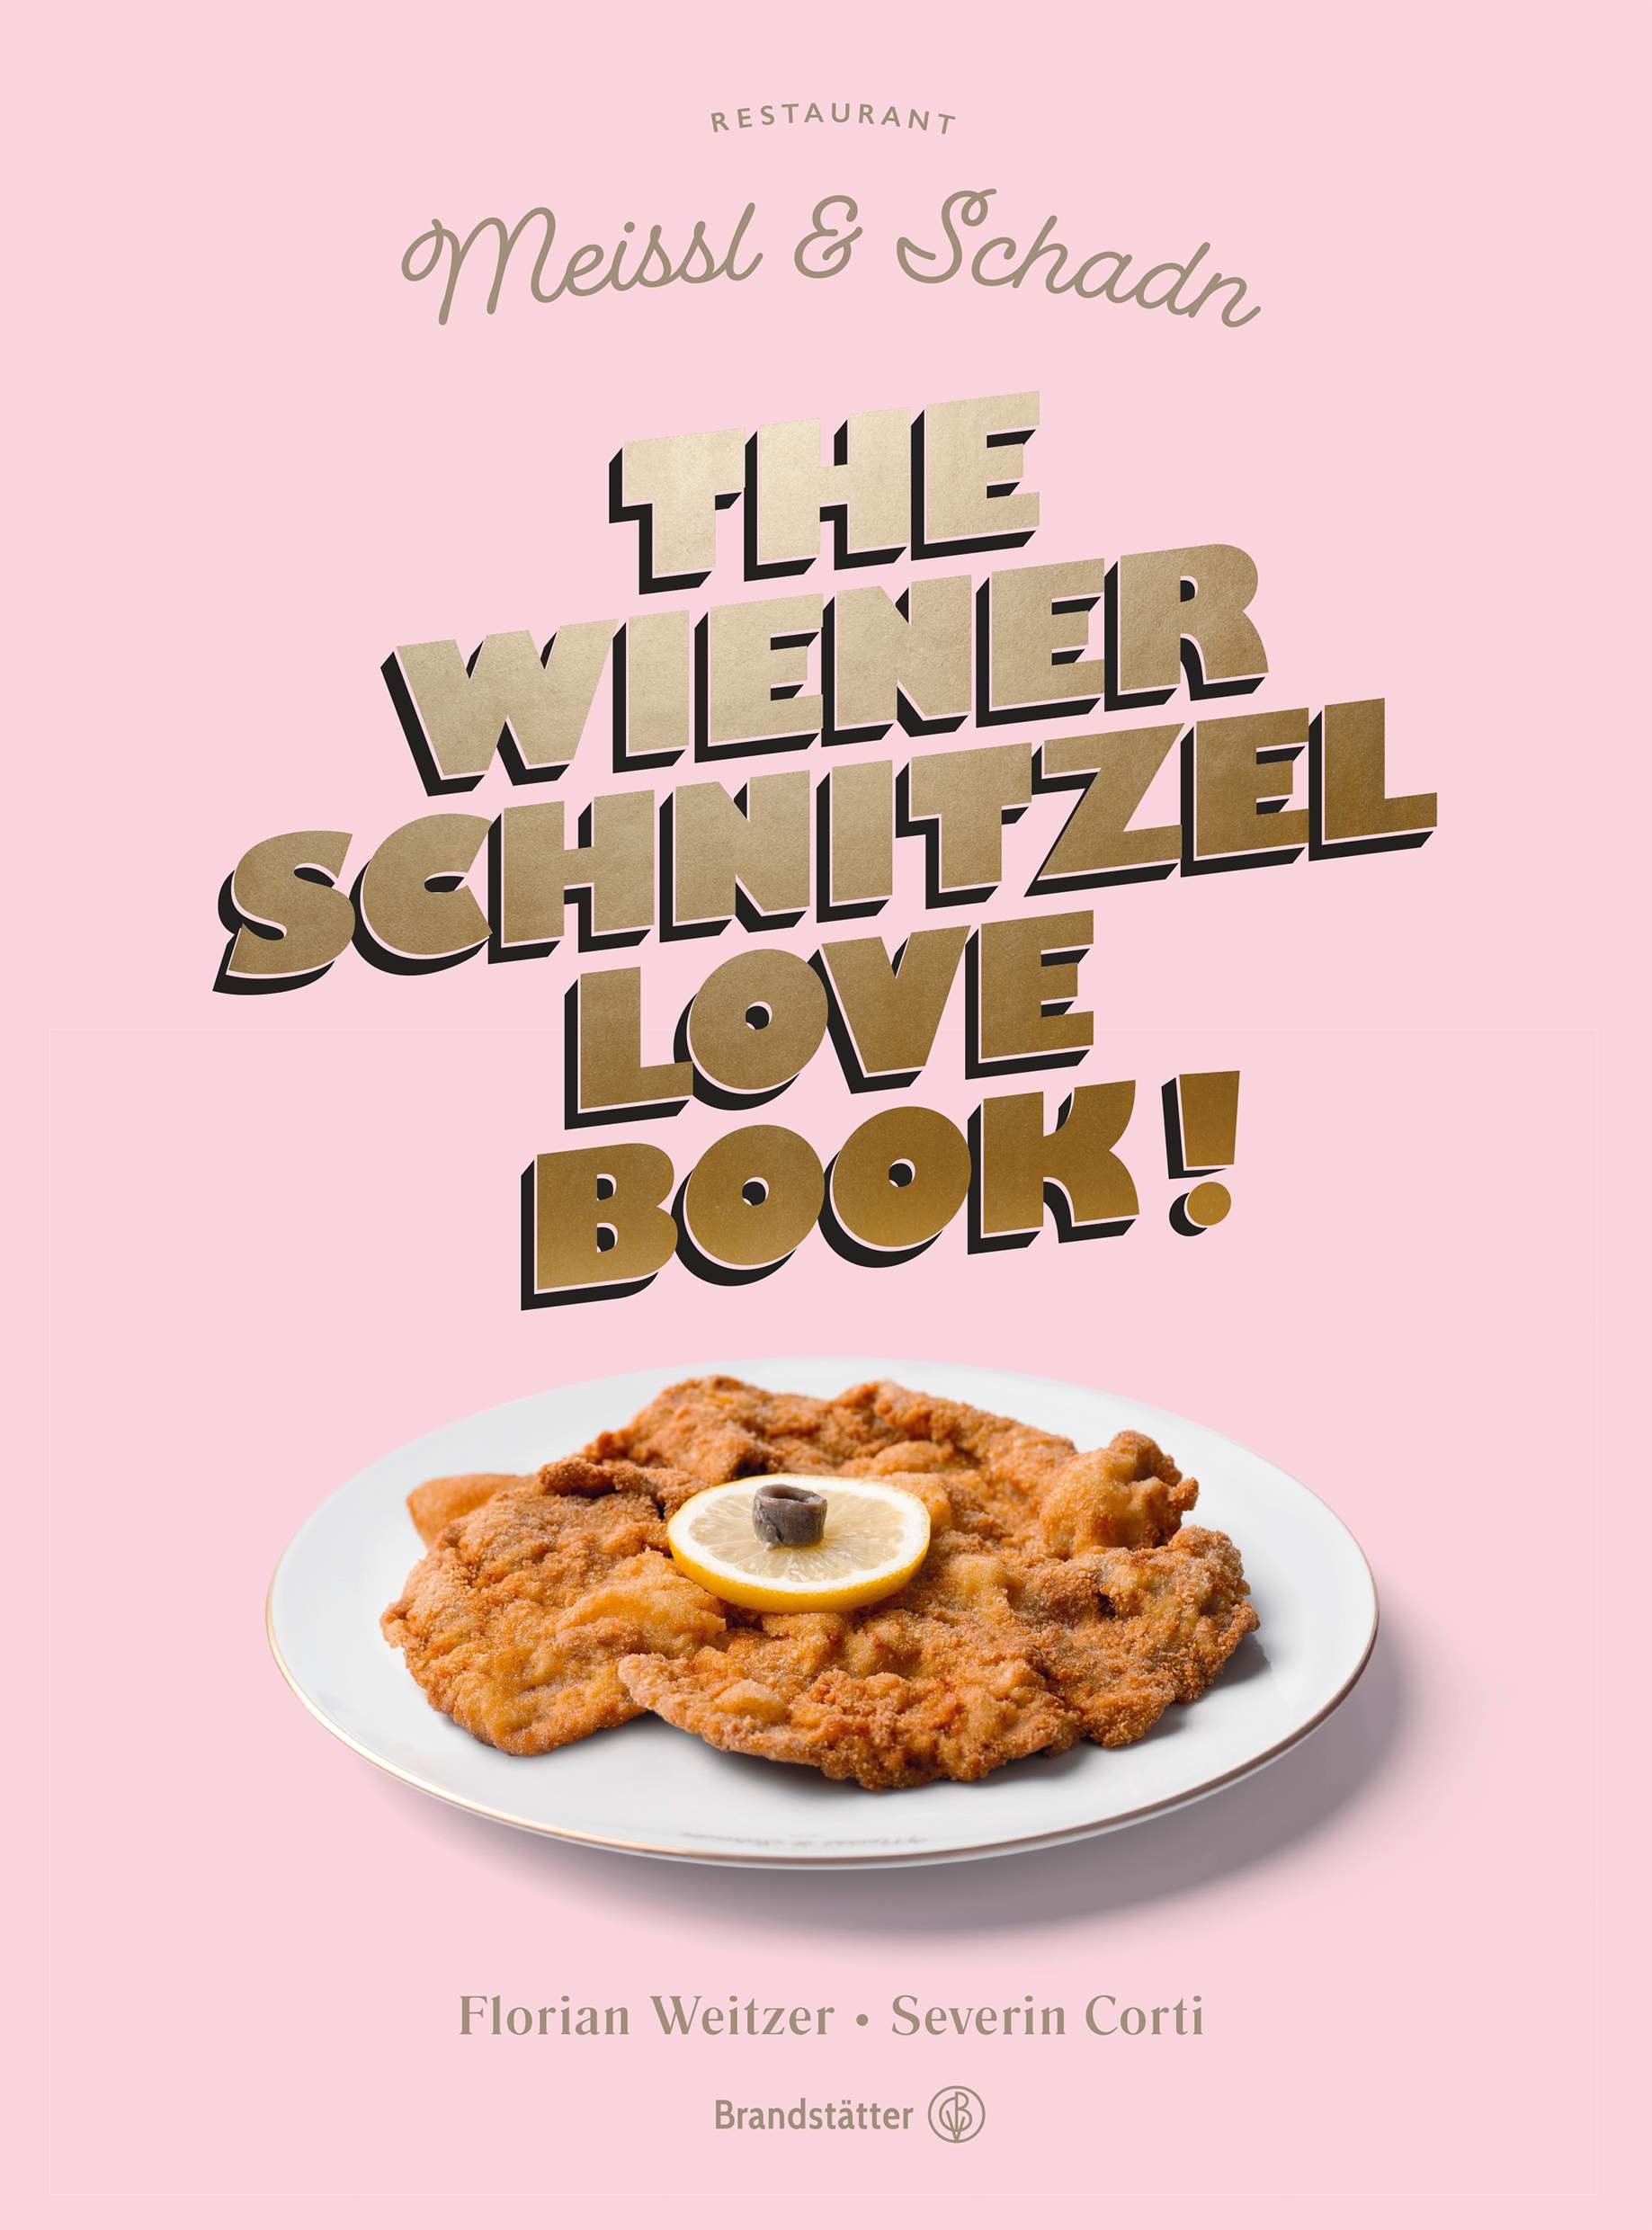 schnitzel-download_1-copy.jpg